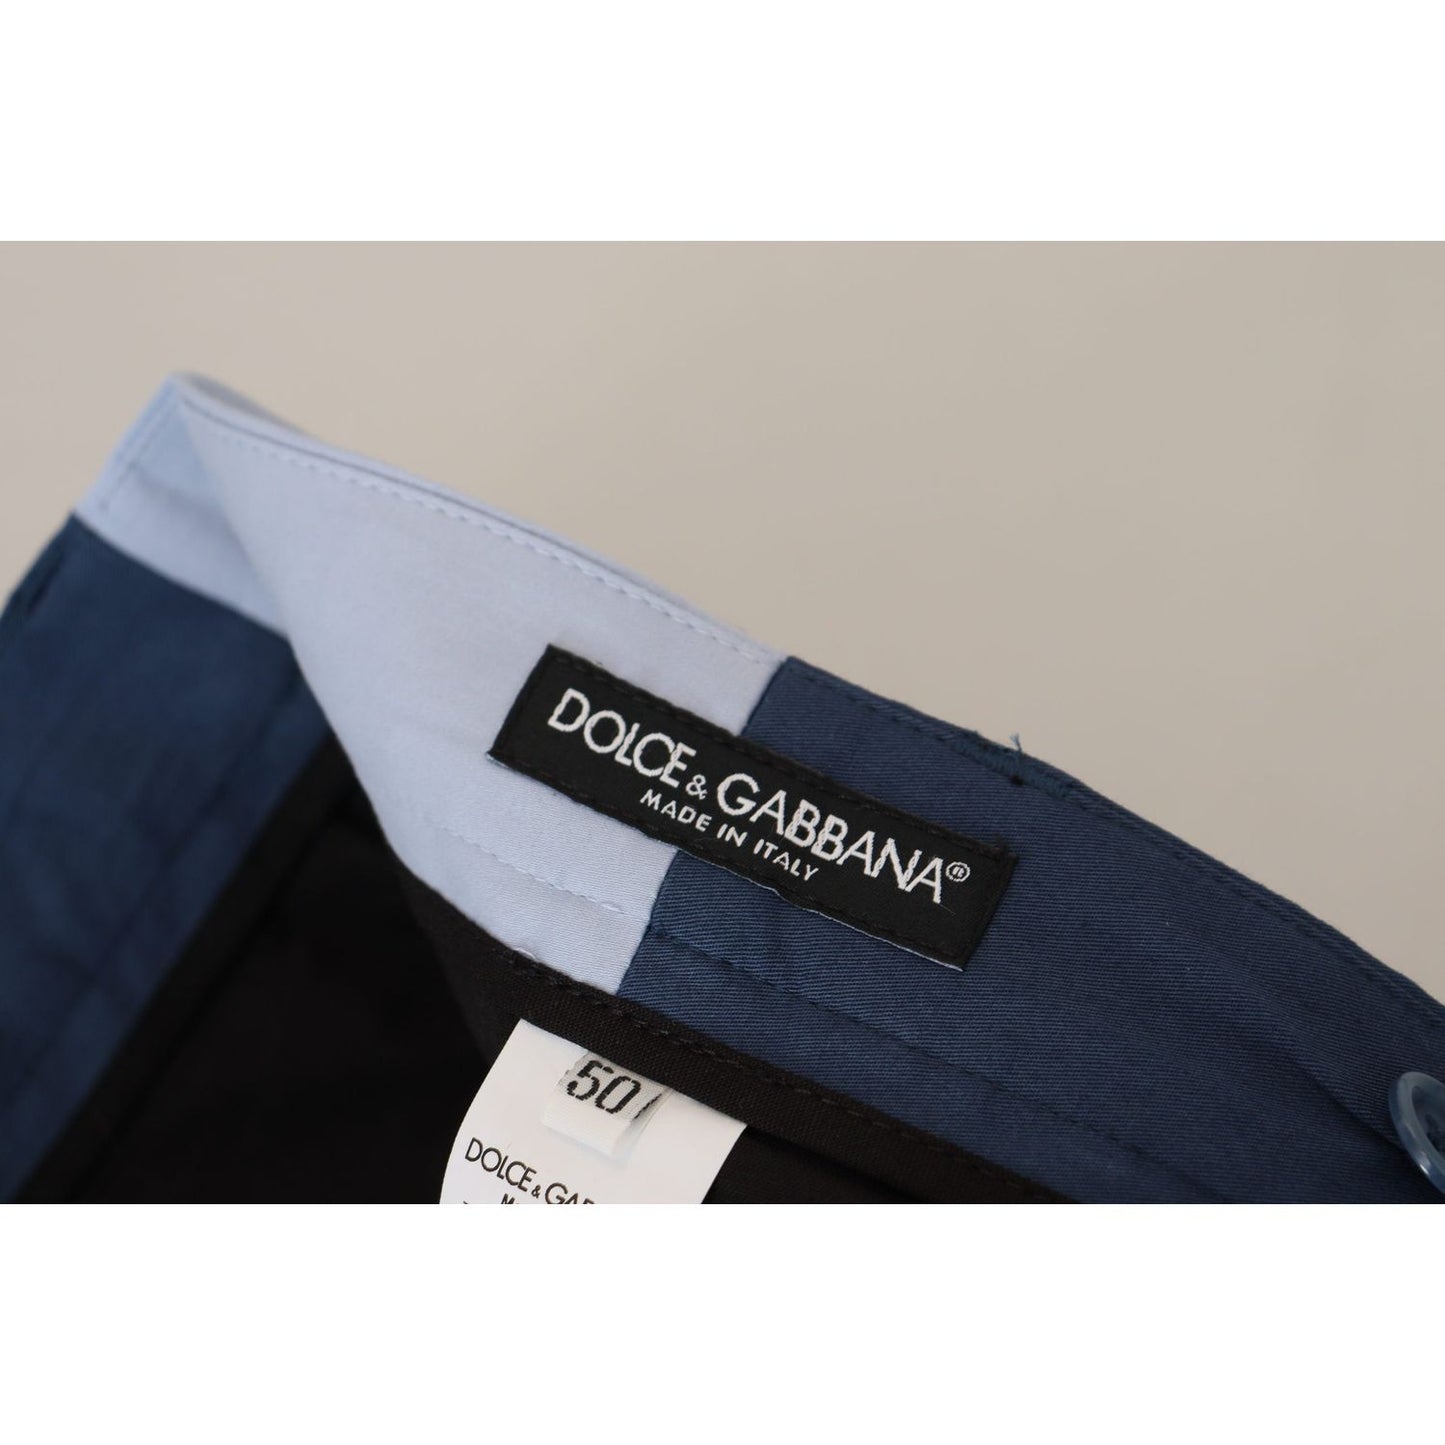 Dolce & Gabbana Elegant Blue Cotton Blend Pants for Men blue-cotton-straight-fit-pants